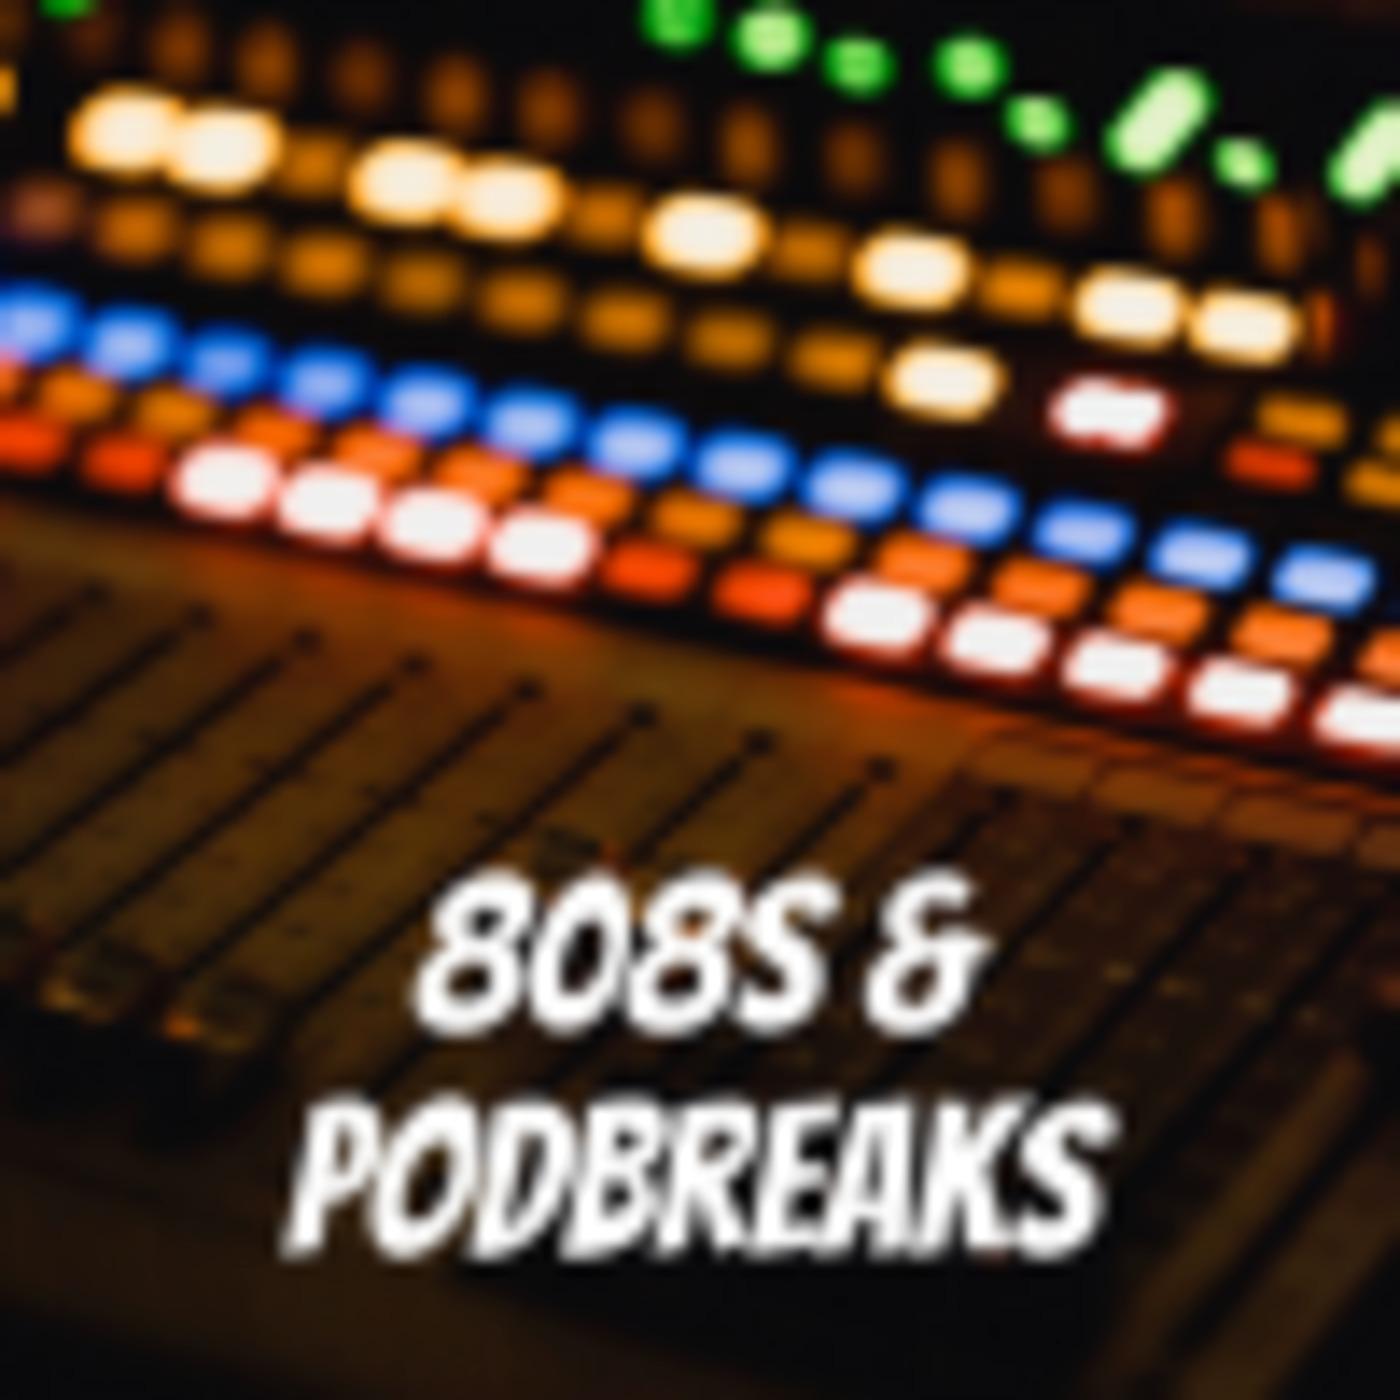 808s & Podbreaks